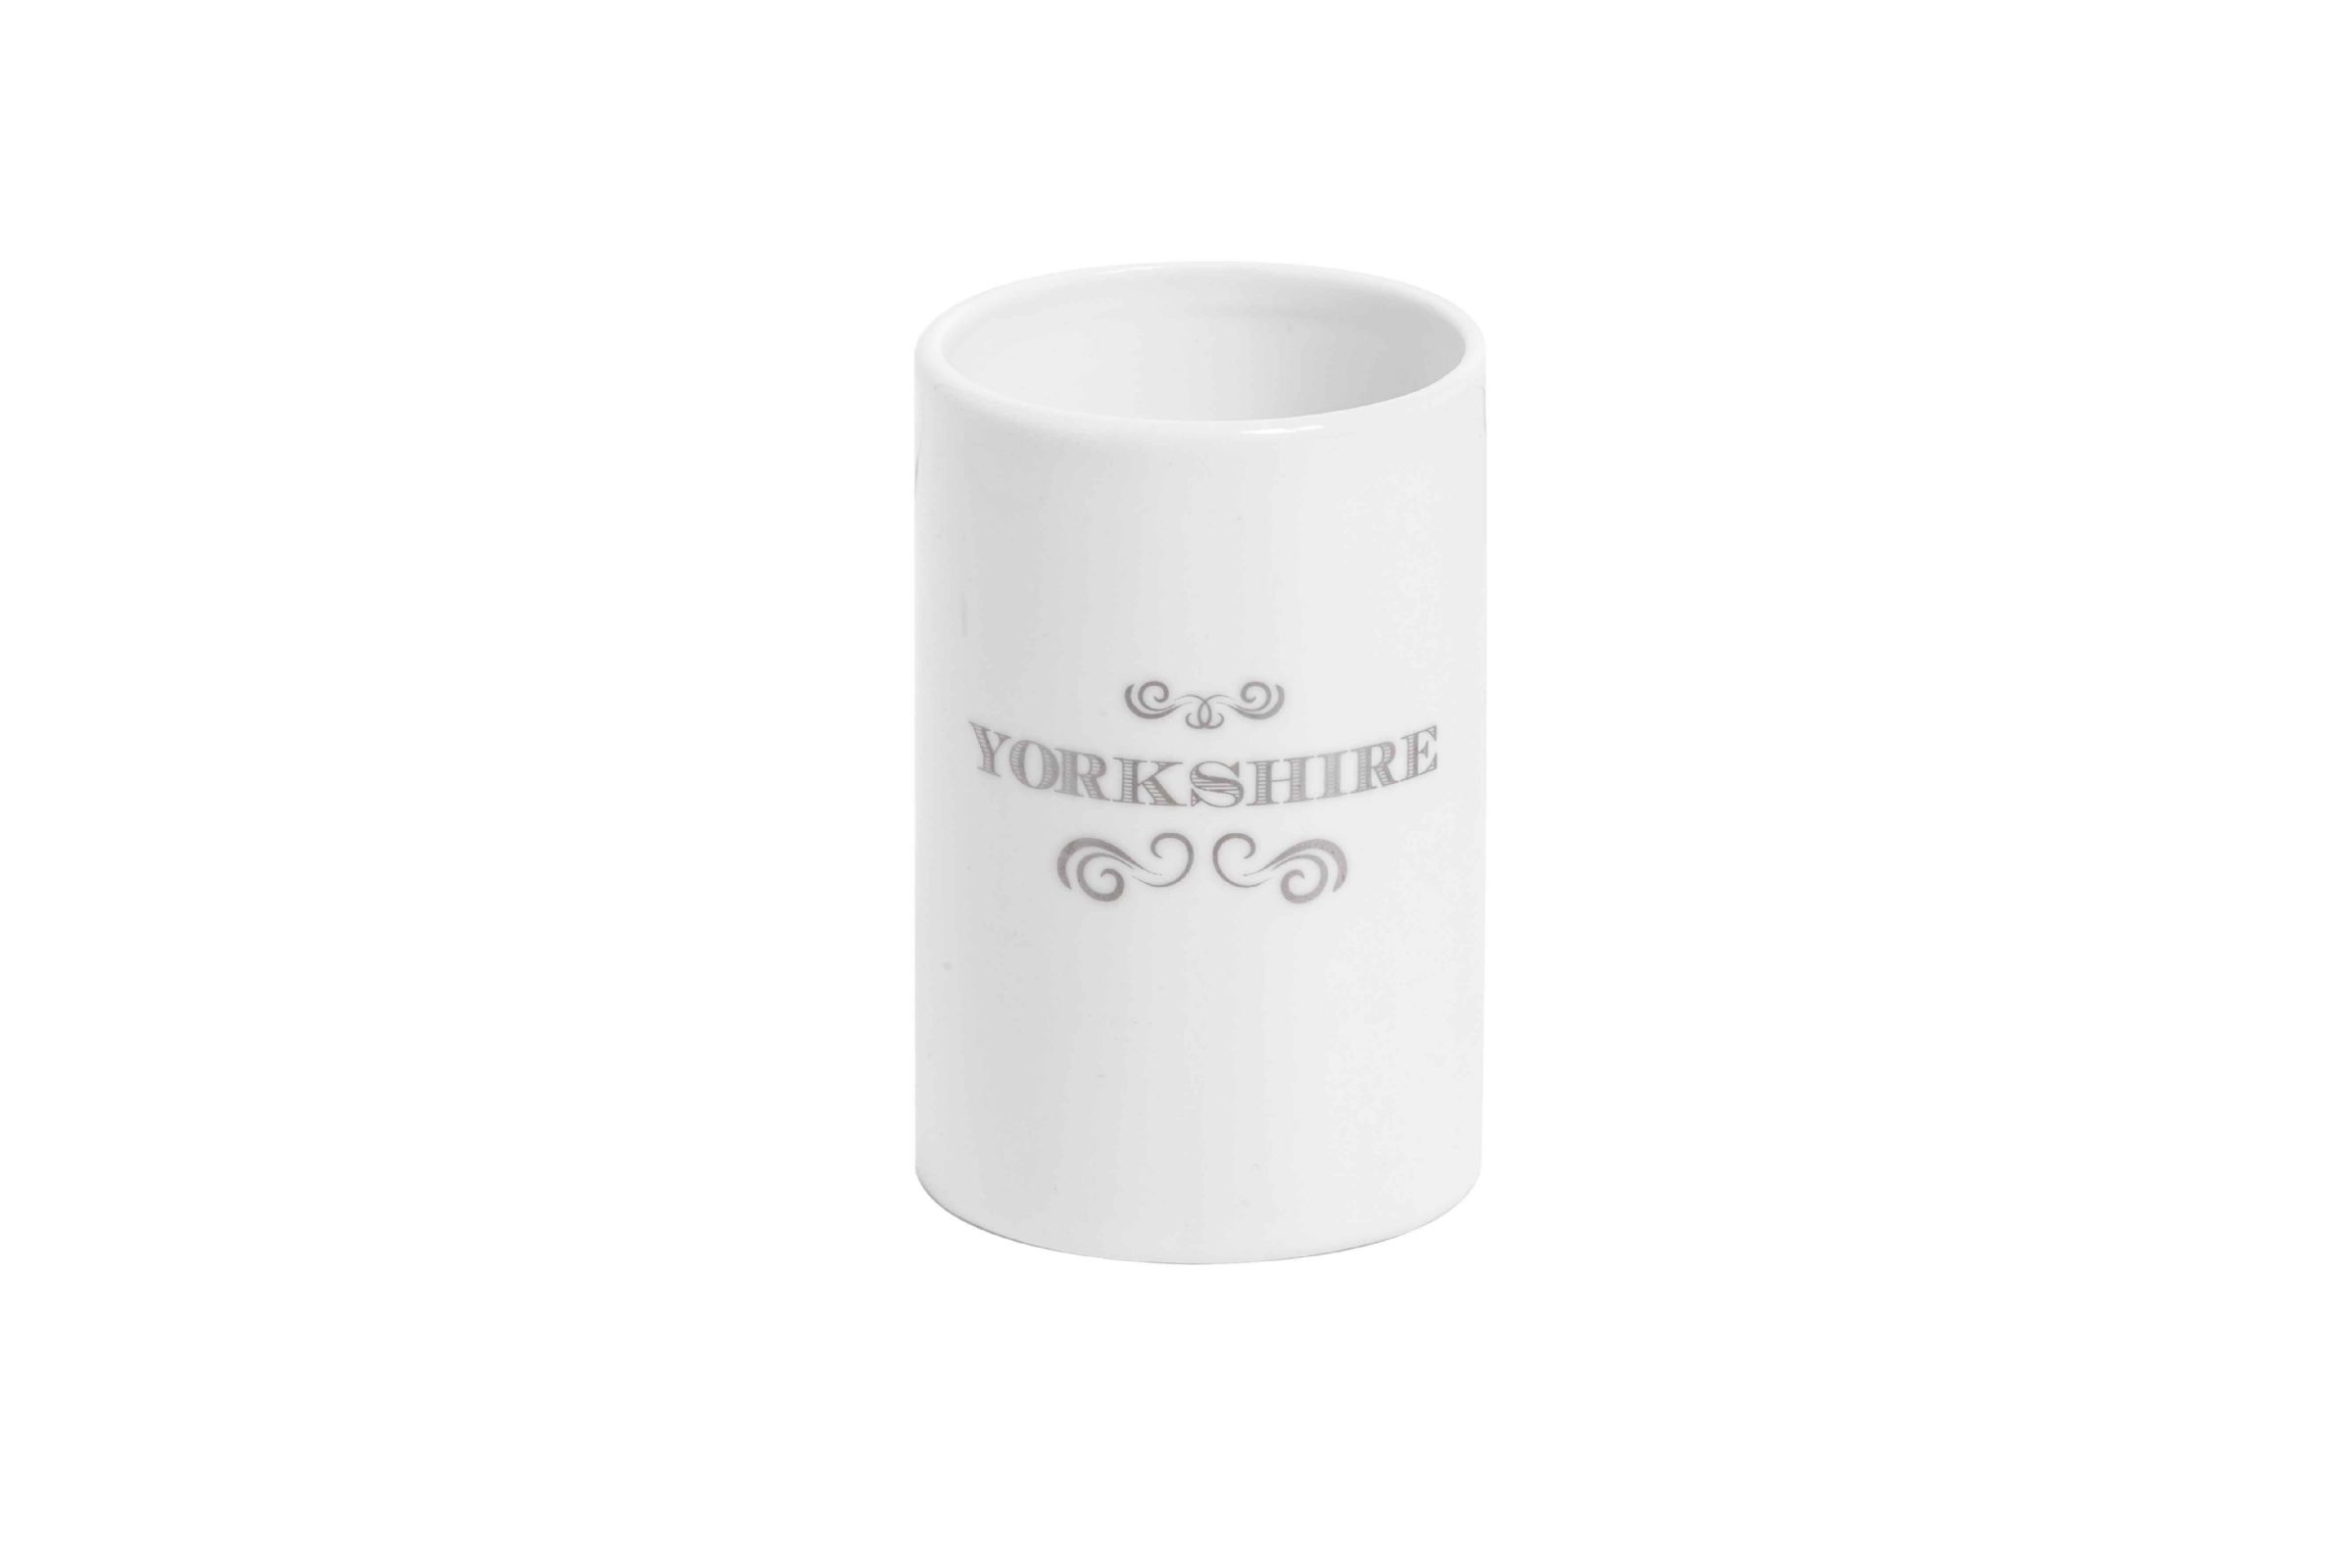 Kúpeľňové doplnky set Yorkshire - Porta spazzolini Yorkshire